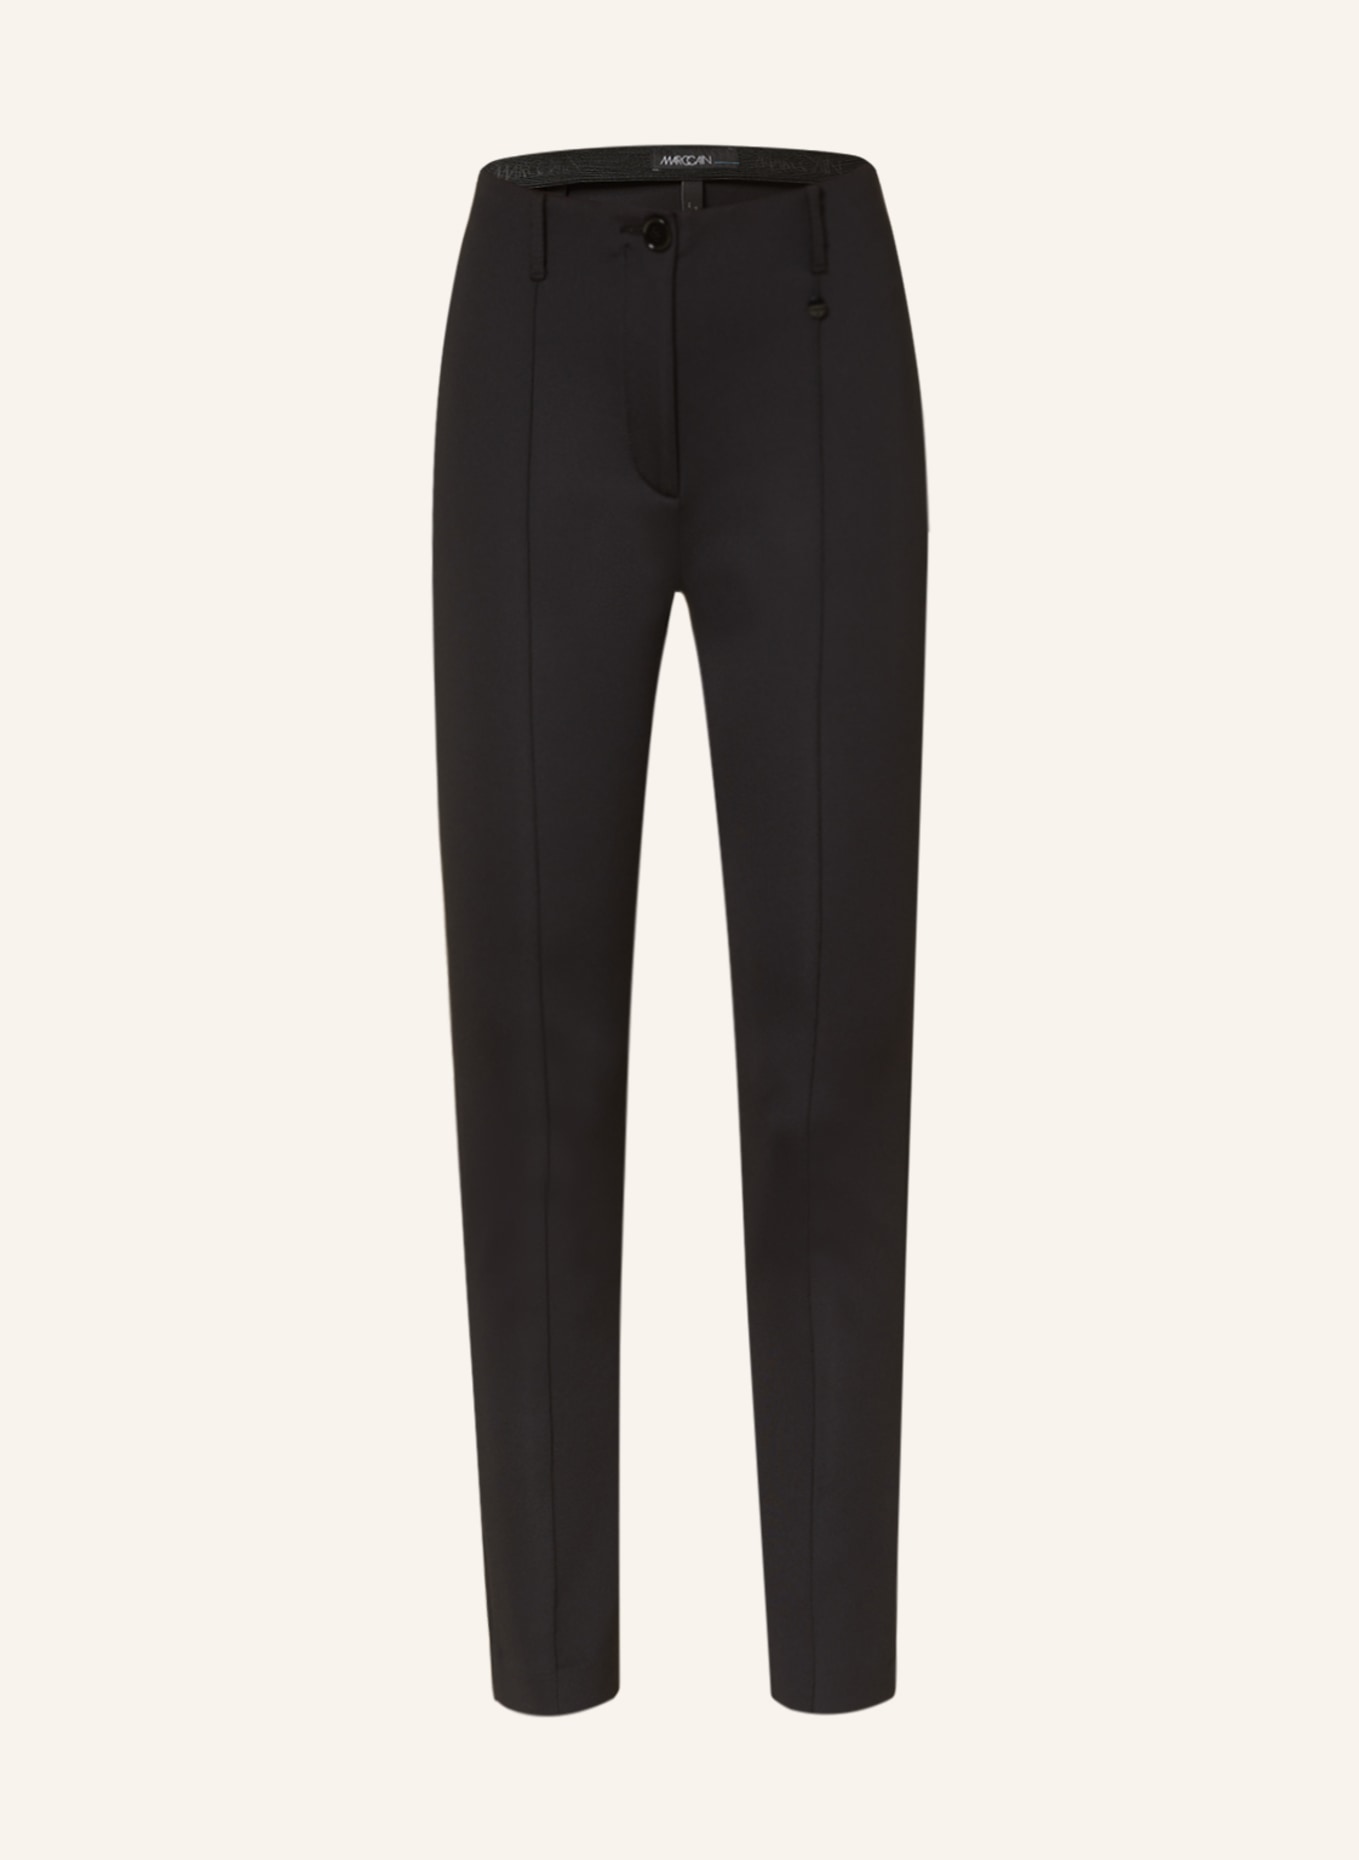 MARC CAIN Jersey pants SYDNEY, Color: 900 BLACK (Image 1)